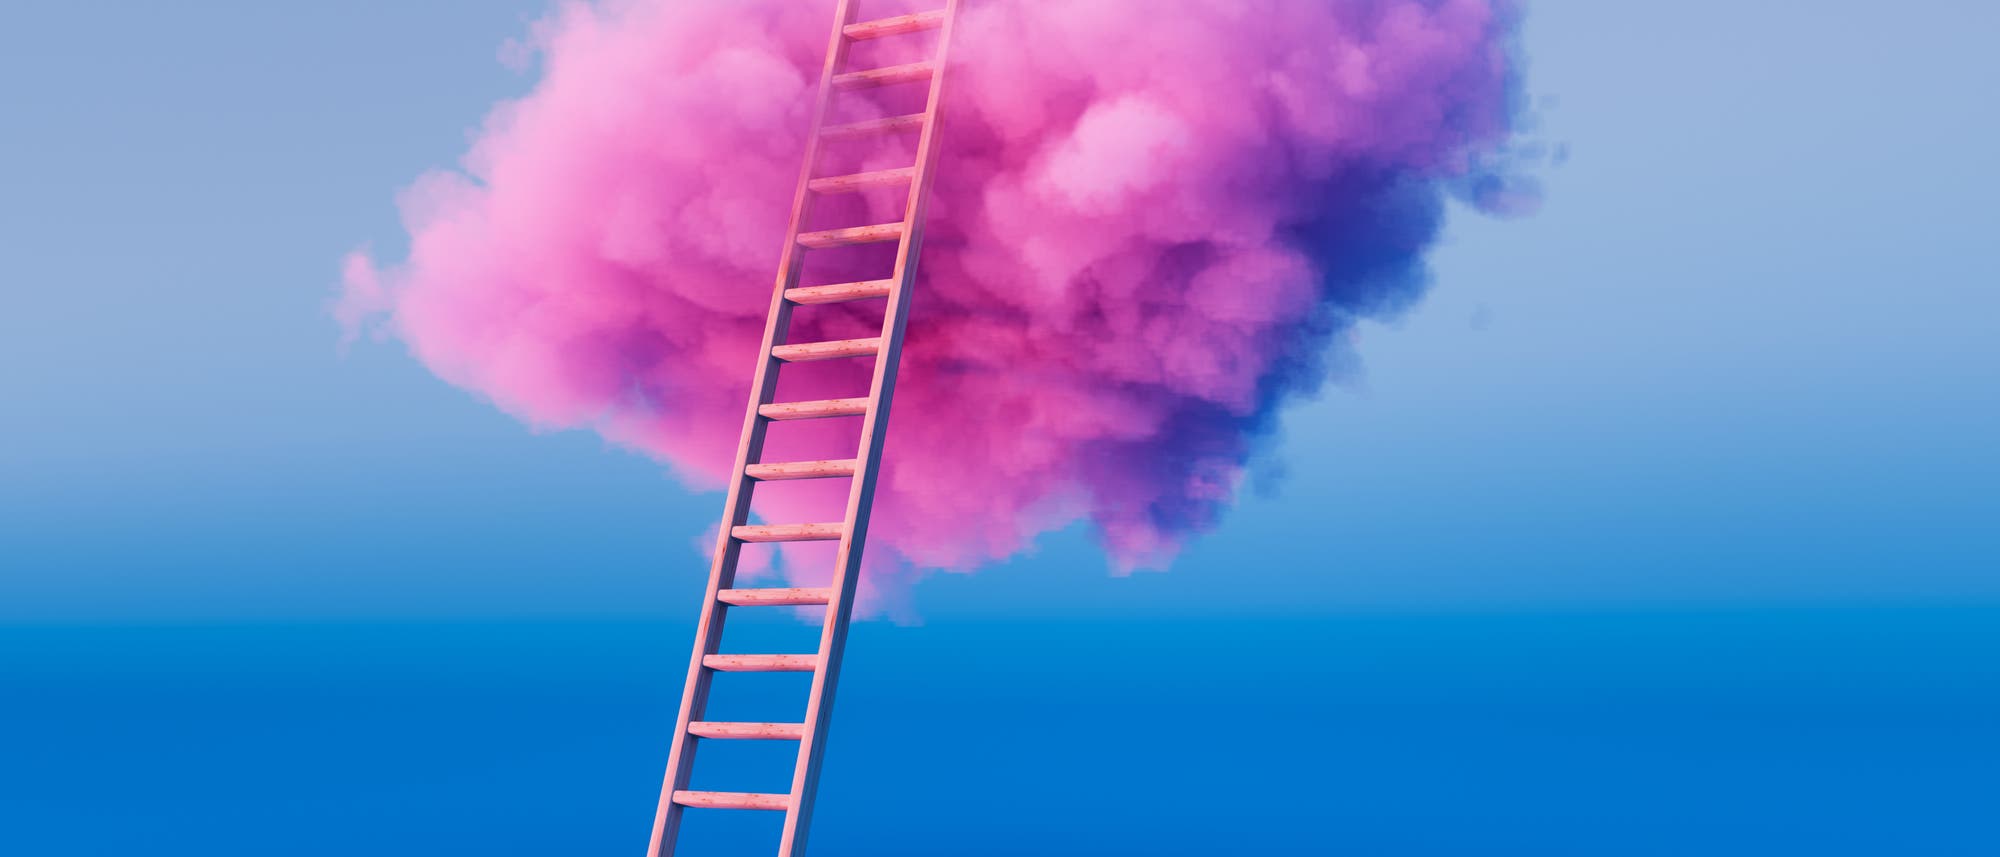 Leiter führt in eine rosafarbene Wolke